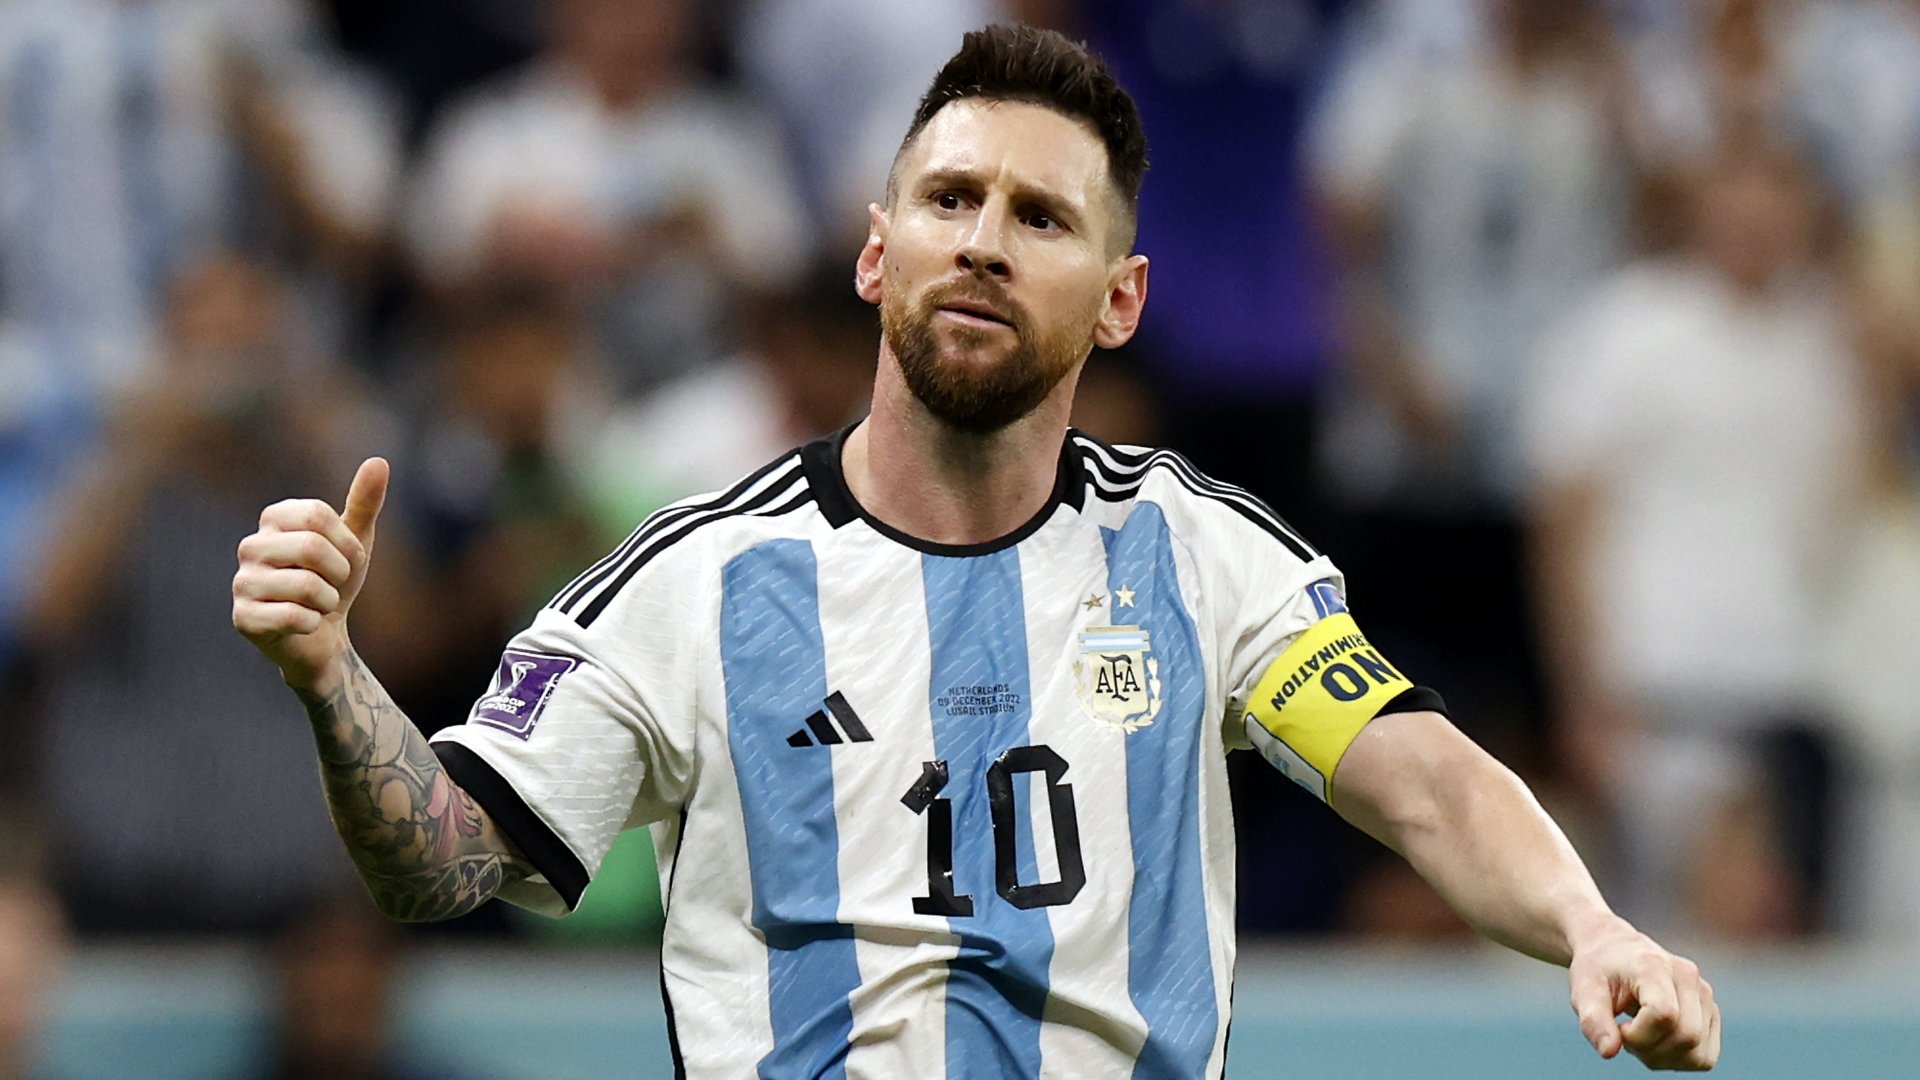 Az argentin Lionel Messi, miután 11-esbõl megszerezte csapata második gólját a katari labdarúgó-világbajnokság negyeddöntõjében játszott Hollandia-Argentína mérkõzésen a Loszaíl Stadionban 2022. december 9-én